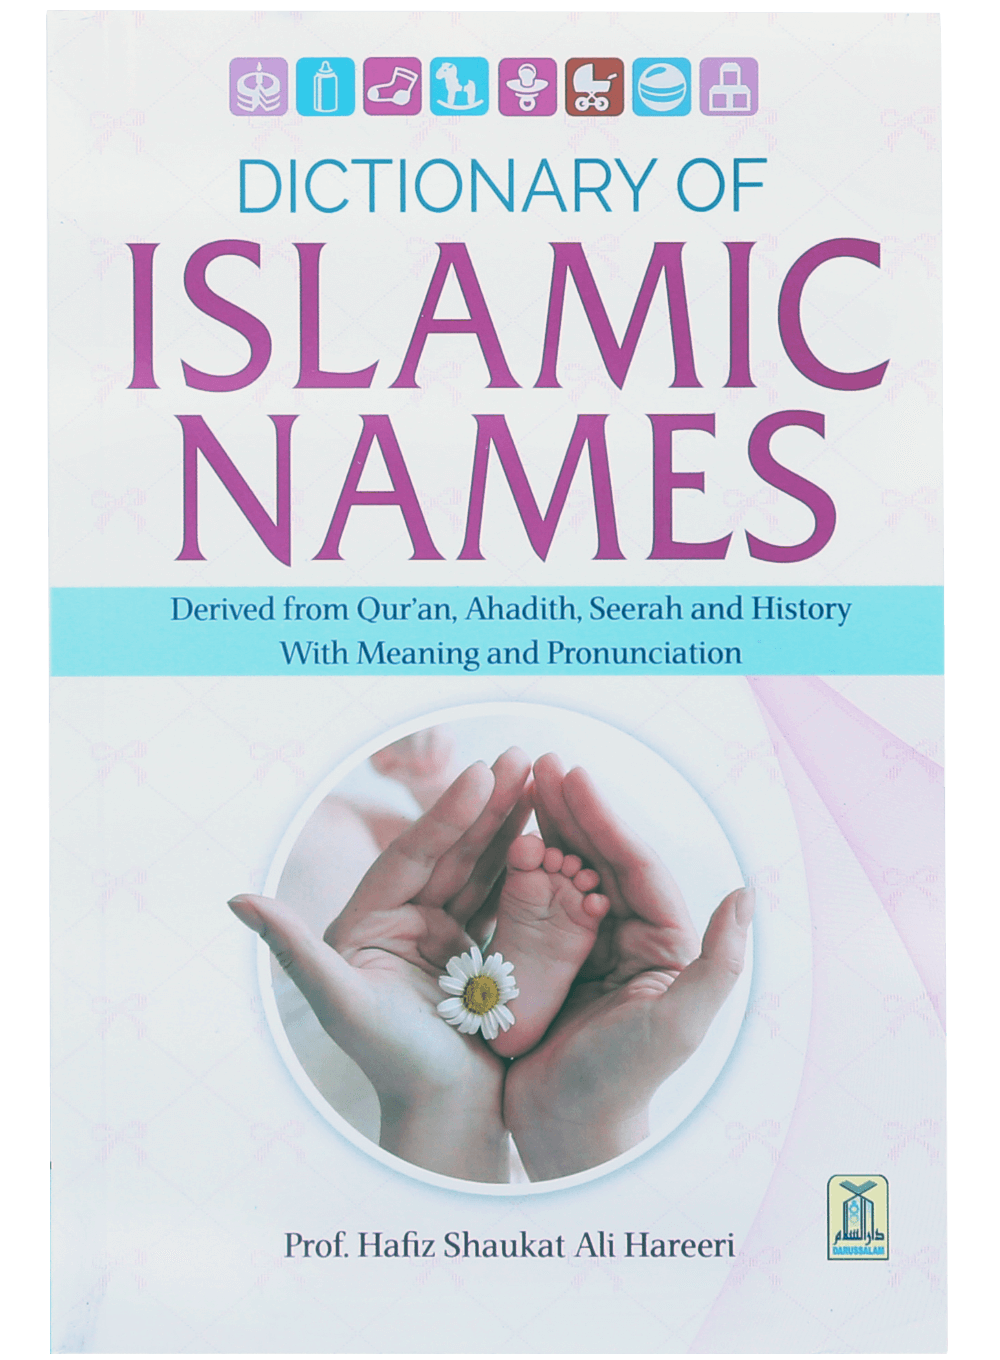 darussalam-2017-10-03-12-06-27dictonary-of-islamic-names-(1)